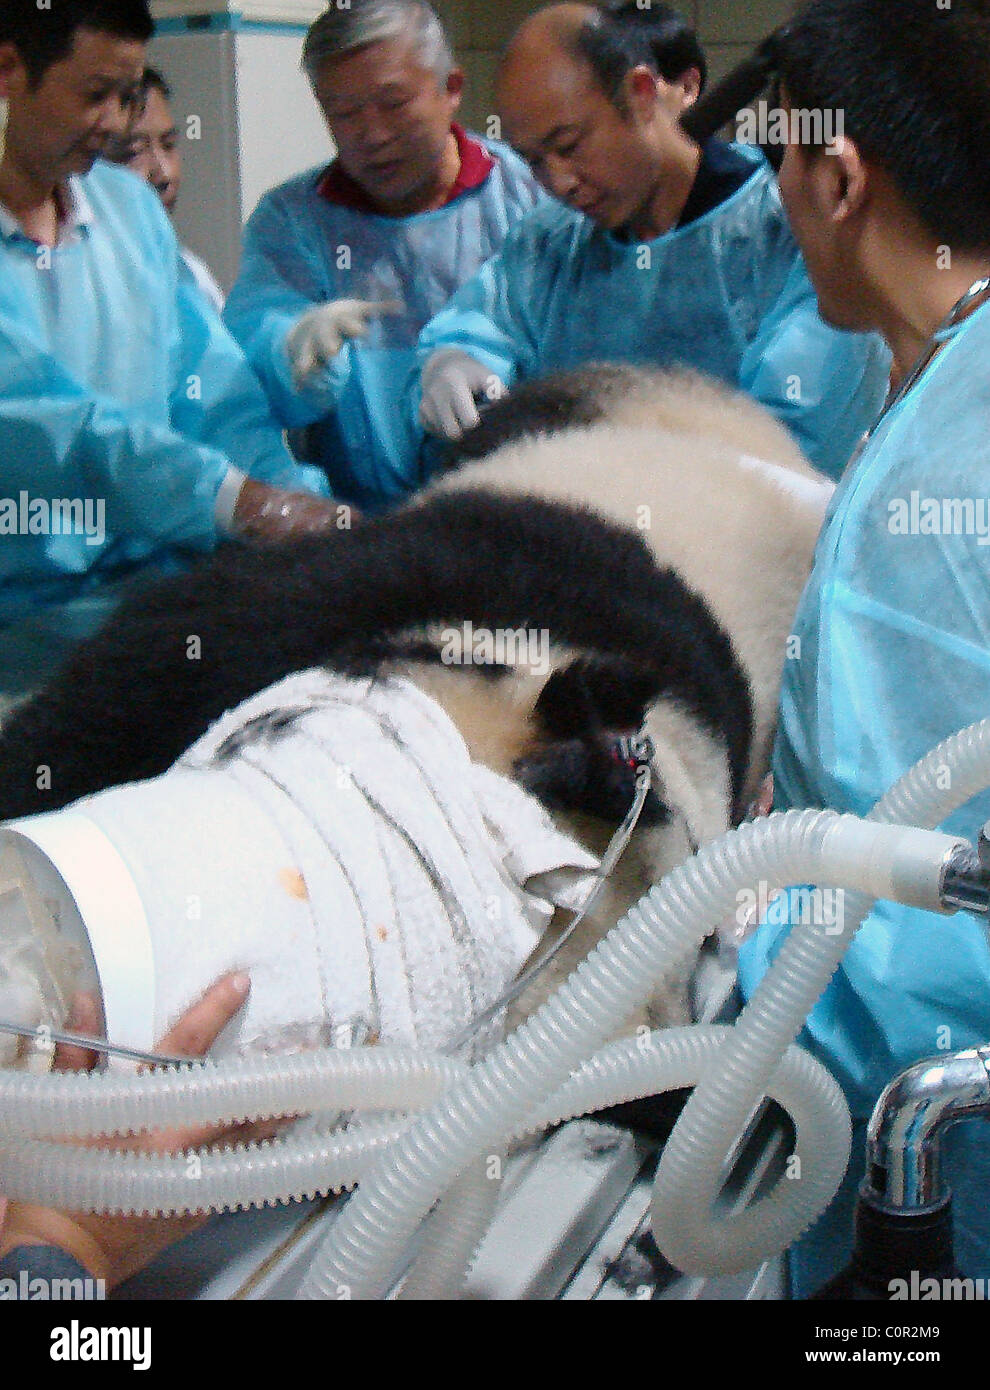 KUNG-Puh PANDA dieser großen Panda-Bär hatte Glück gehabt nach einem Sturz während des Spielens mit seinen pelzigen Freunden leiden. Die Stockfoto